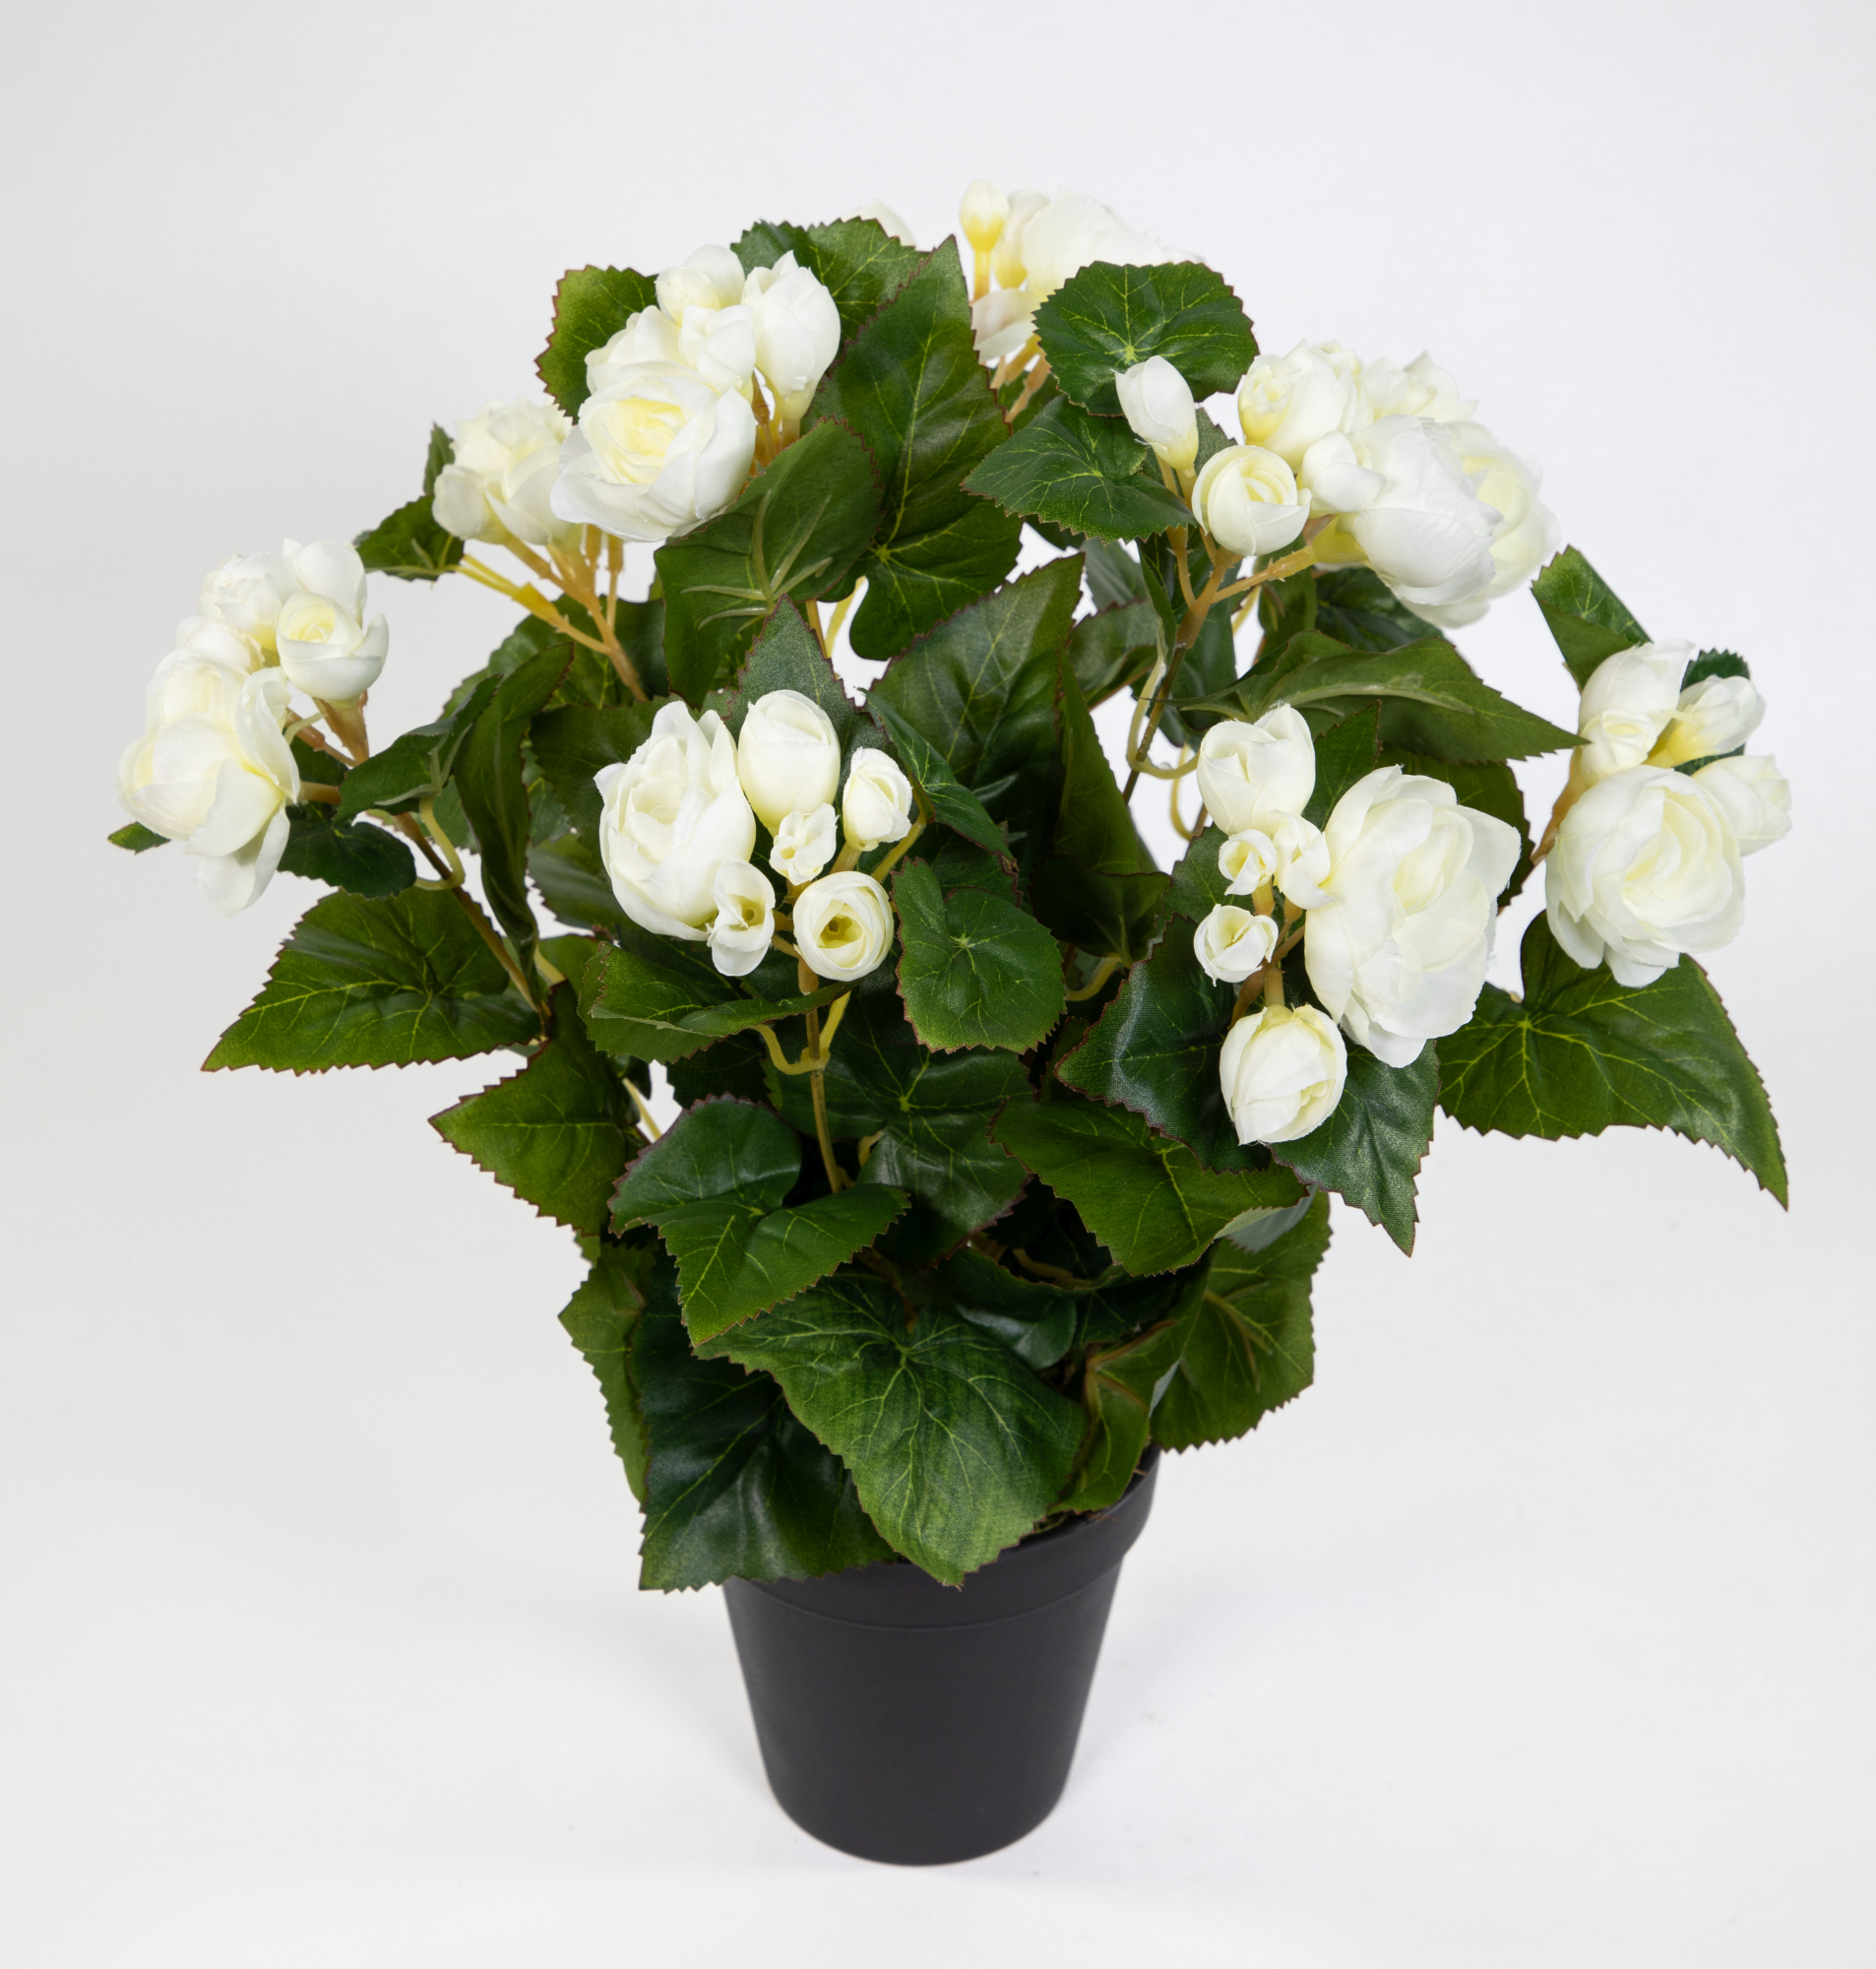 Begonie 38cm im LM künstlicher weiß Kunstpflanzen Begonienbusch künstliche Pflanze Topf Kunstblumen